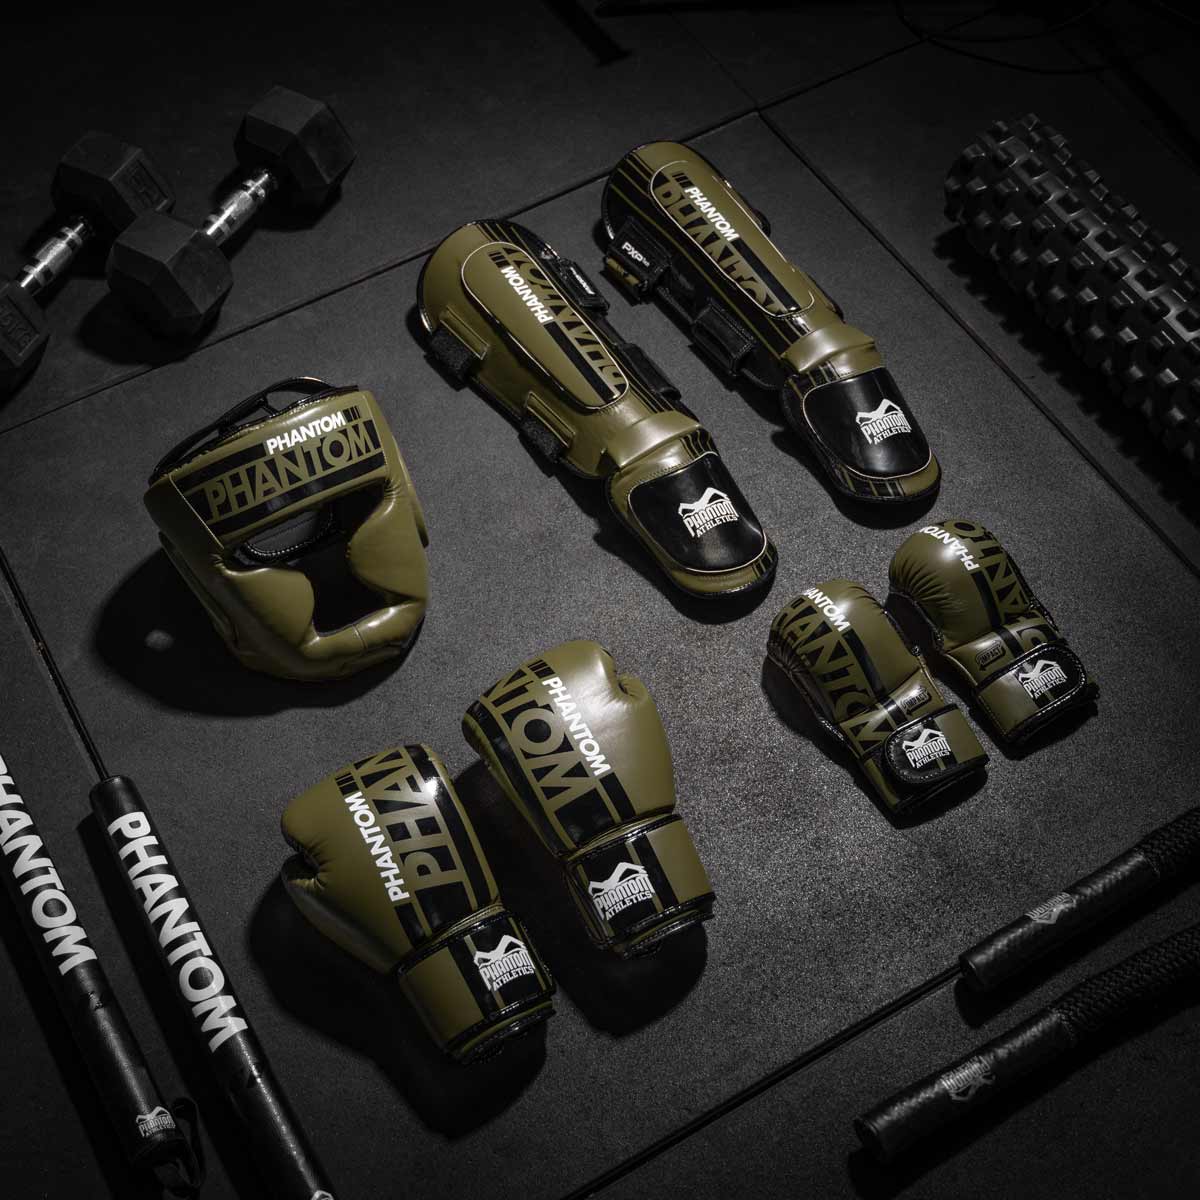 Das komplette Phantom Apex MMA Fight Equipment in Army Grün. Bestehend aus Kopfschutz, Boxhandschuhen, MMA Handschuhen und Hybrid Schienbeinschonern.